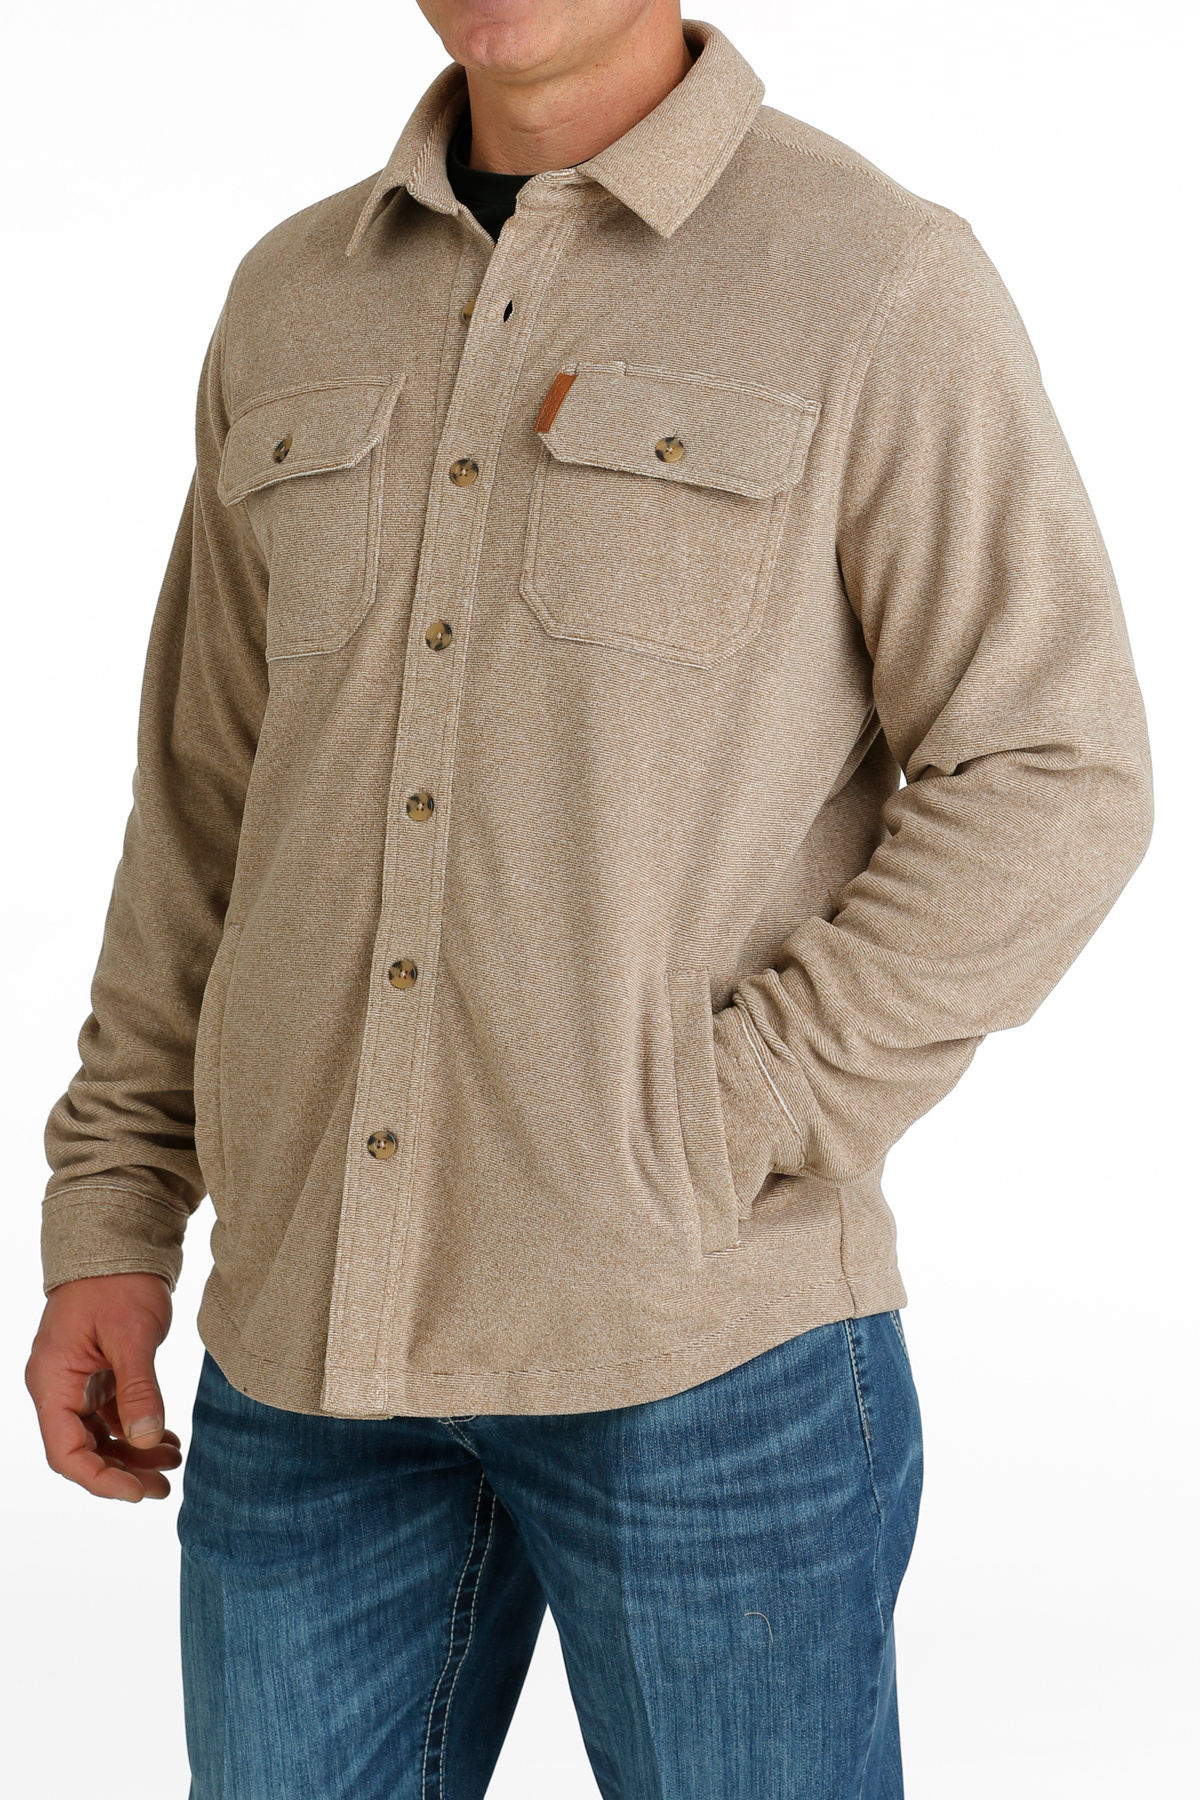 Kinema fleece jacketサイト引用